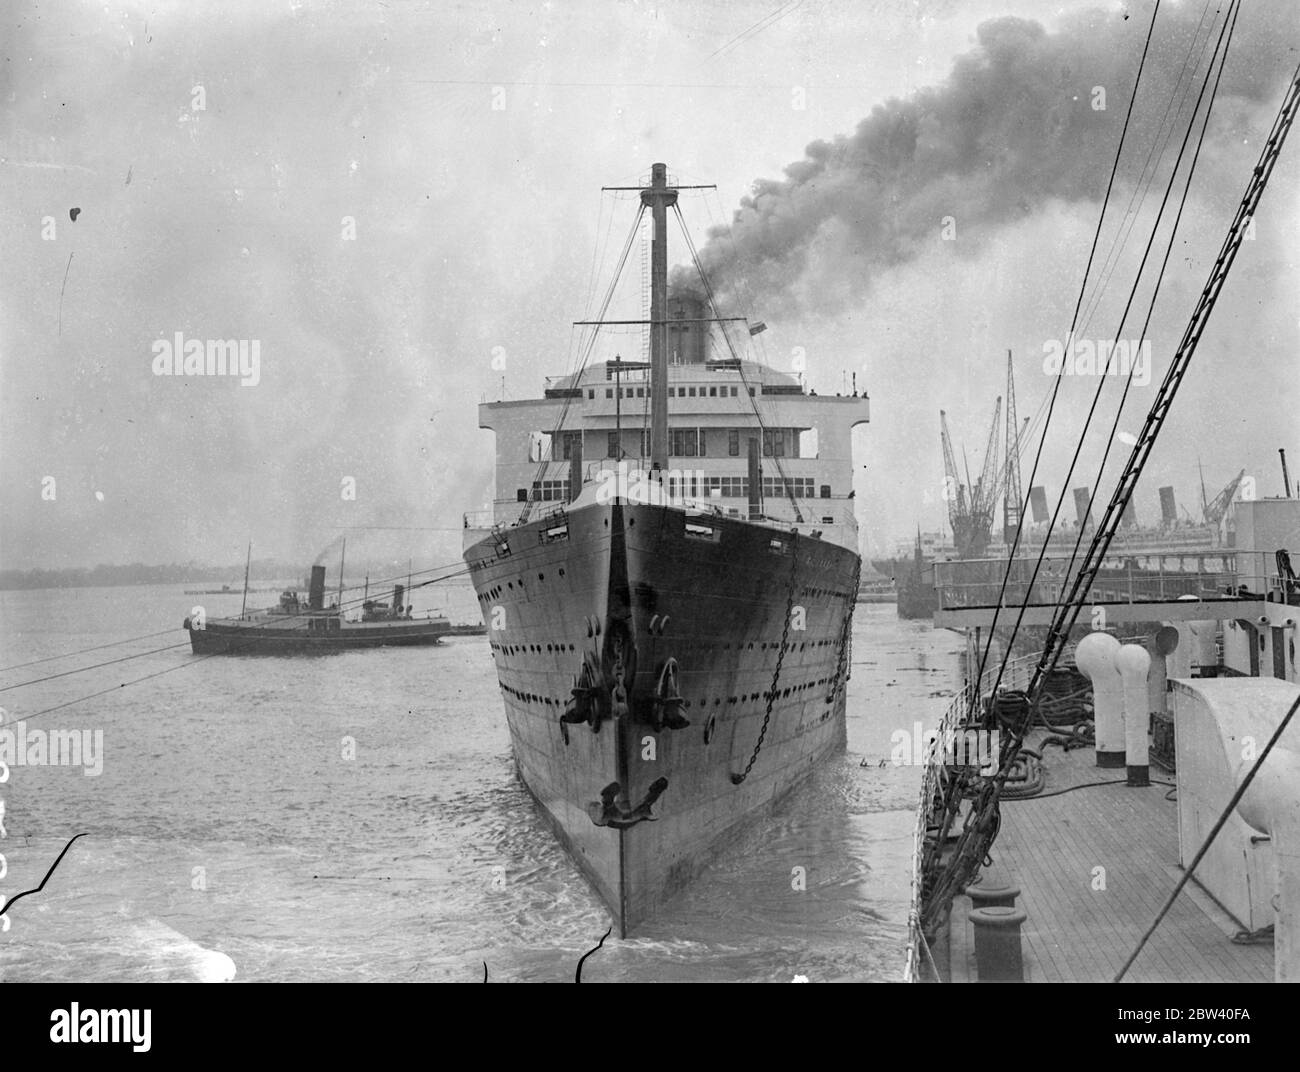 HMS Caledonia, früher der Cunard White Star Liner Majestic, segelte von Southhampton Rosyth aus, um eine neue Karriere als Ausbildungsschiff zu beginnen. Die Arbeit, sie zu bekehren, hat viele Monate gedauert. Foto zeigt: Arbeiter, die bei der Umwandlung halfen, HMS Caledonia zu beobachten, wie sie von Southhampton aus segelt. 08. April 1937 Stockfoto